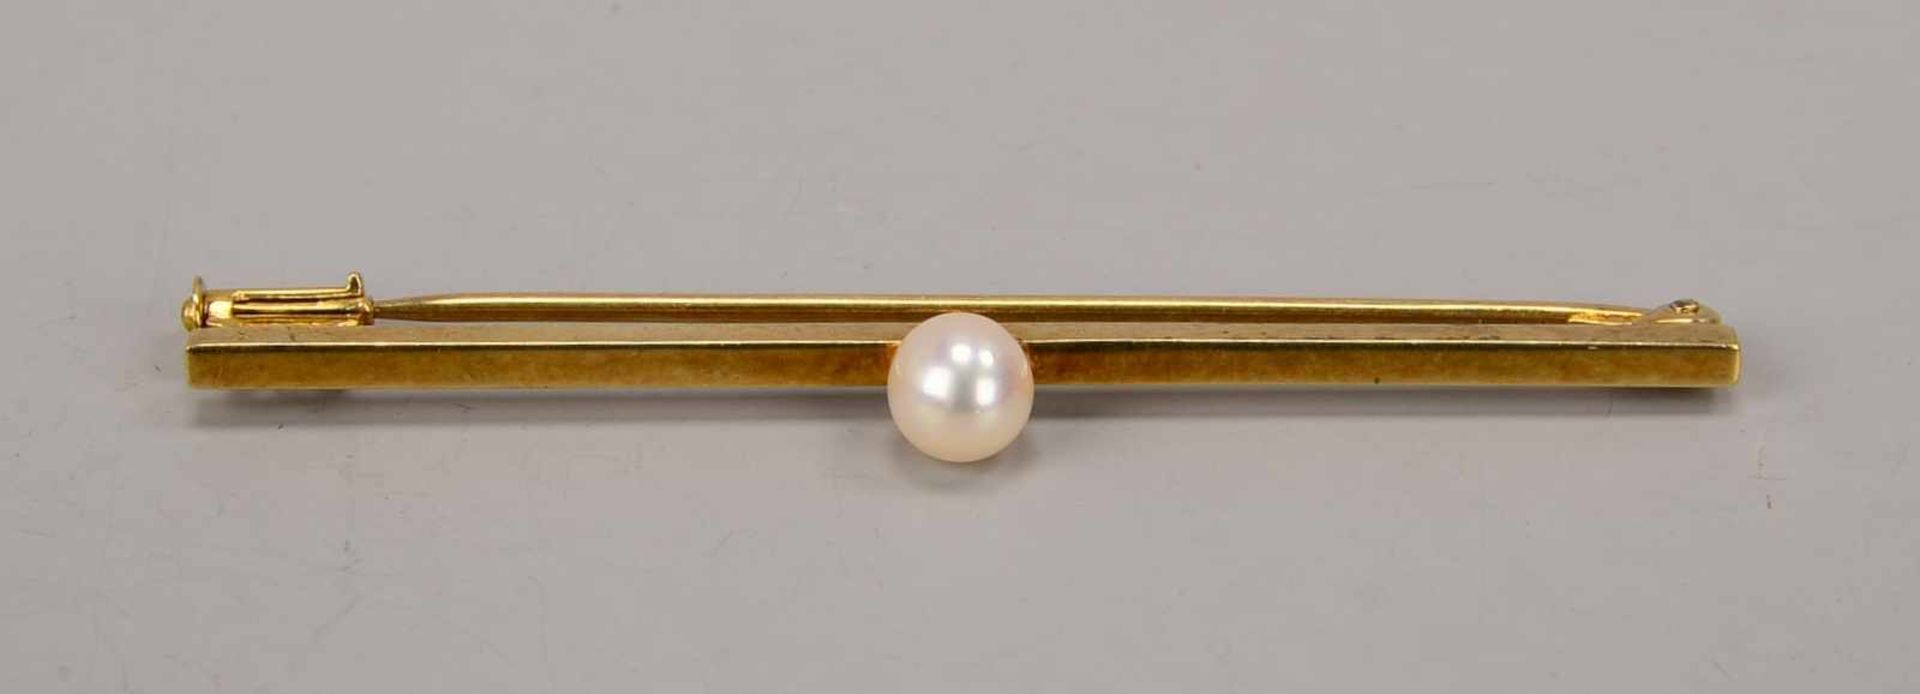 Stabbrosche, 585 GG, besetzt mit einzelner Perle; Länge 5,5 cm, Gewicht 3,7 g